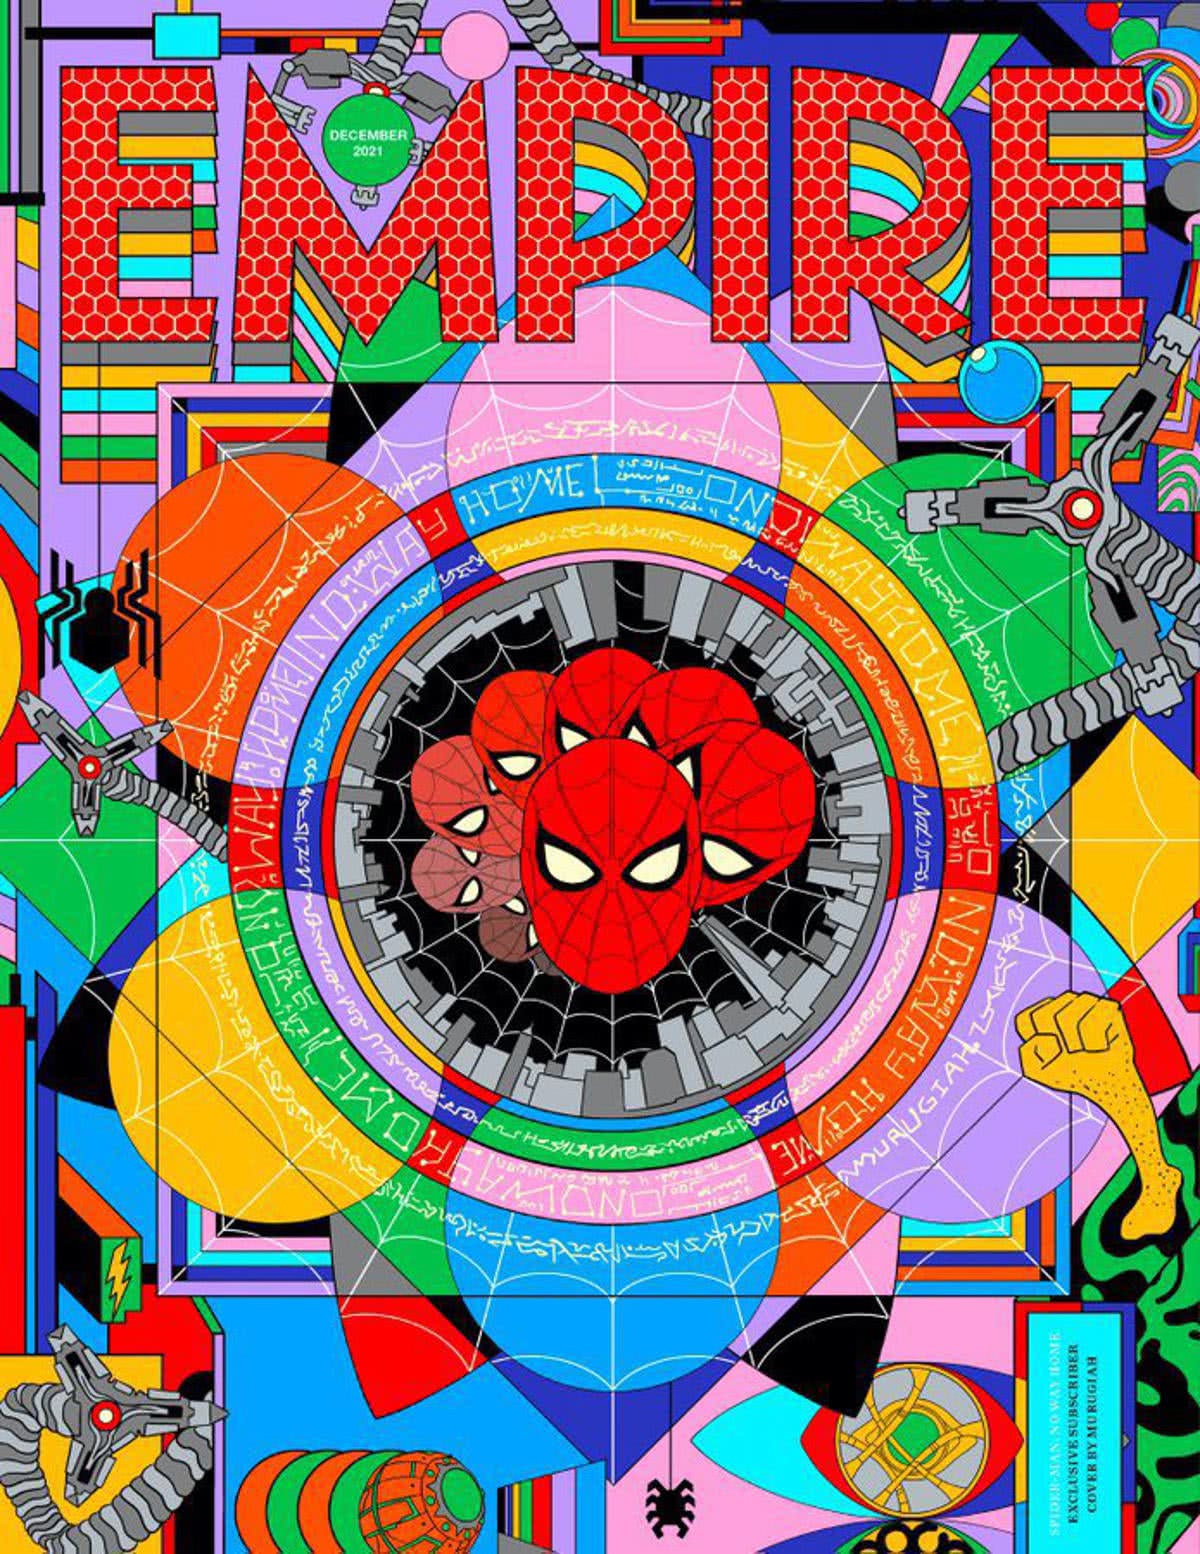 Capa da revista Empire (Divulgação)